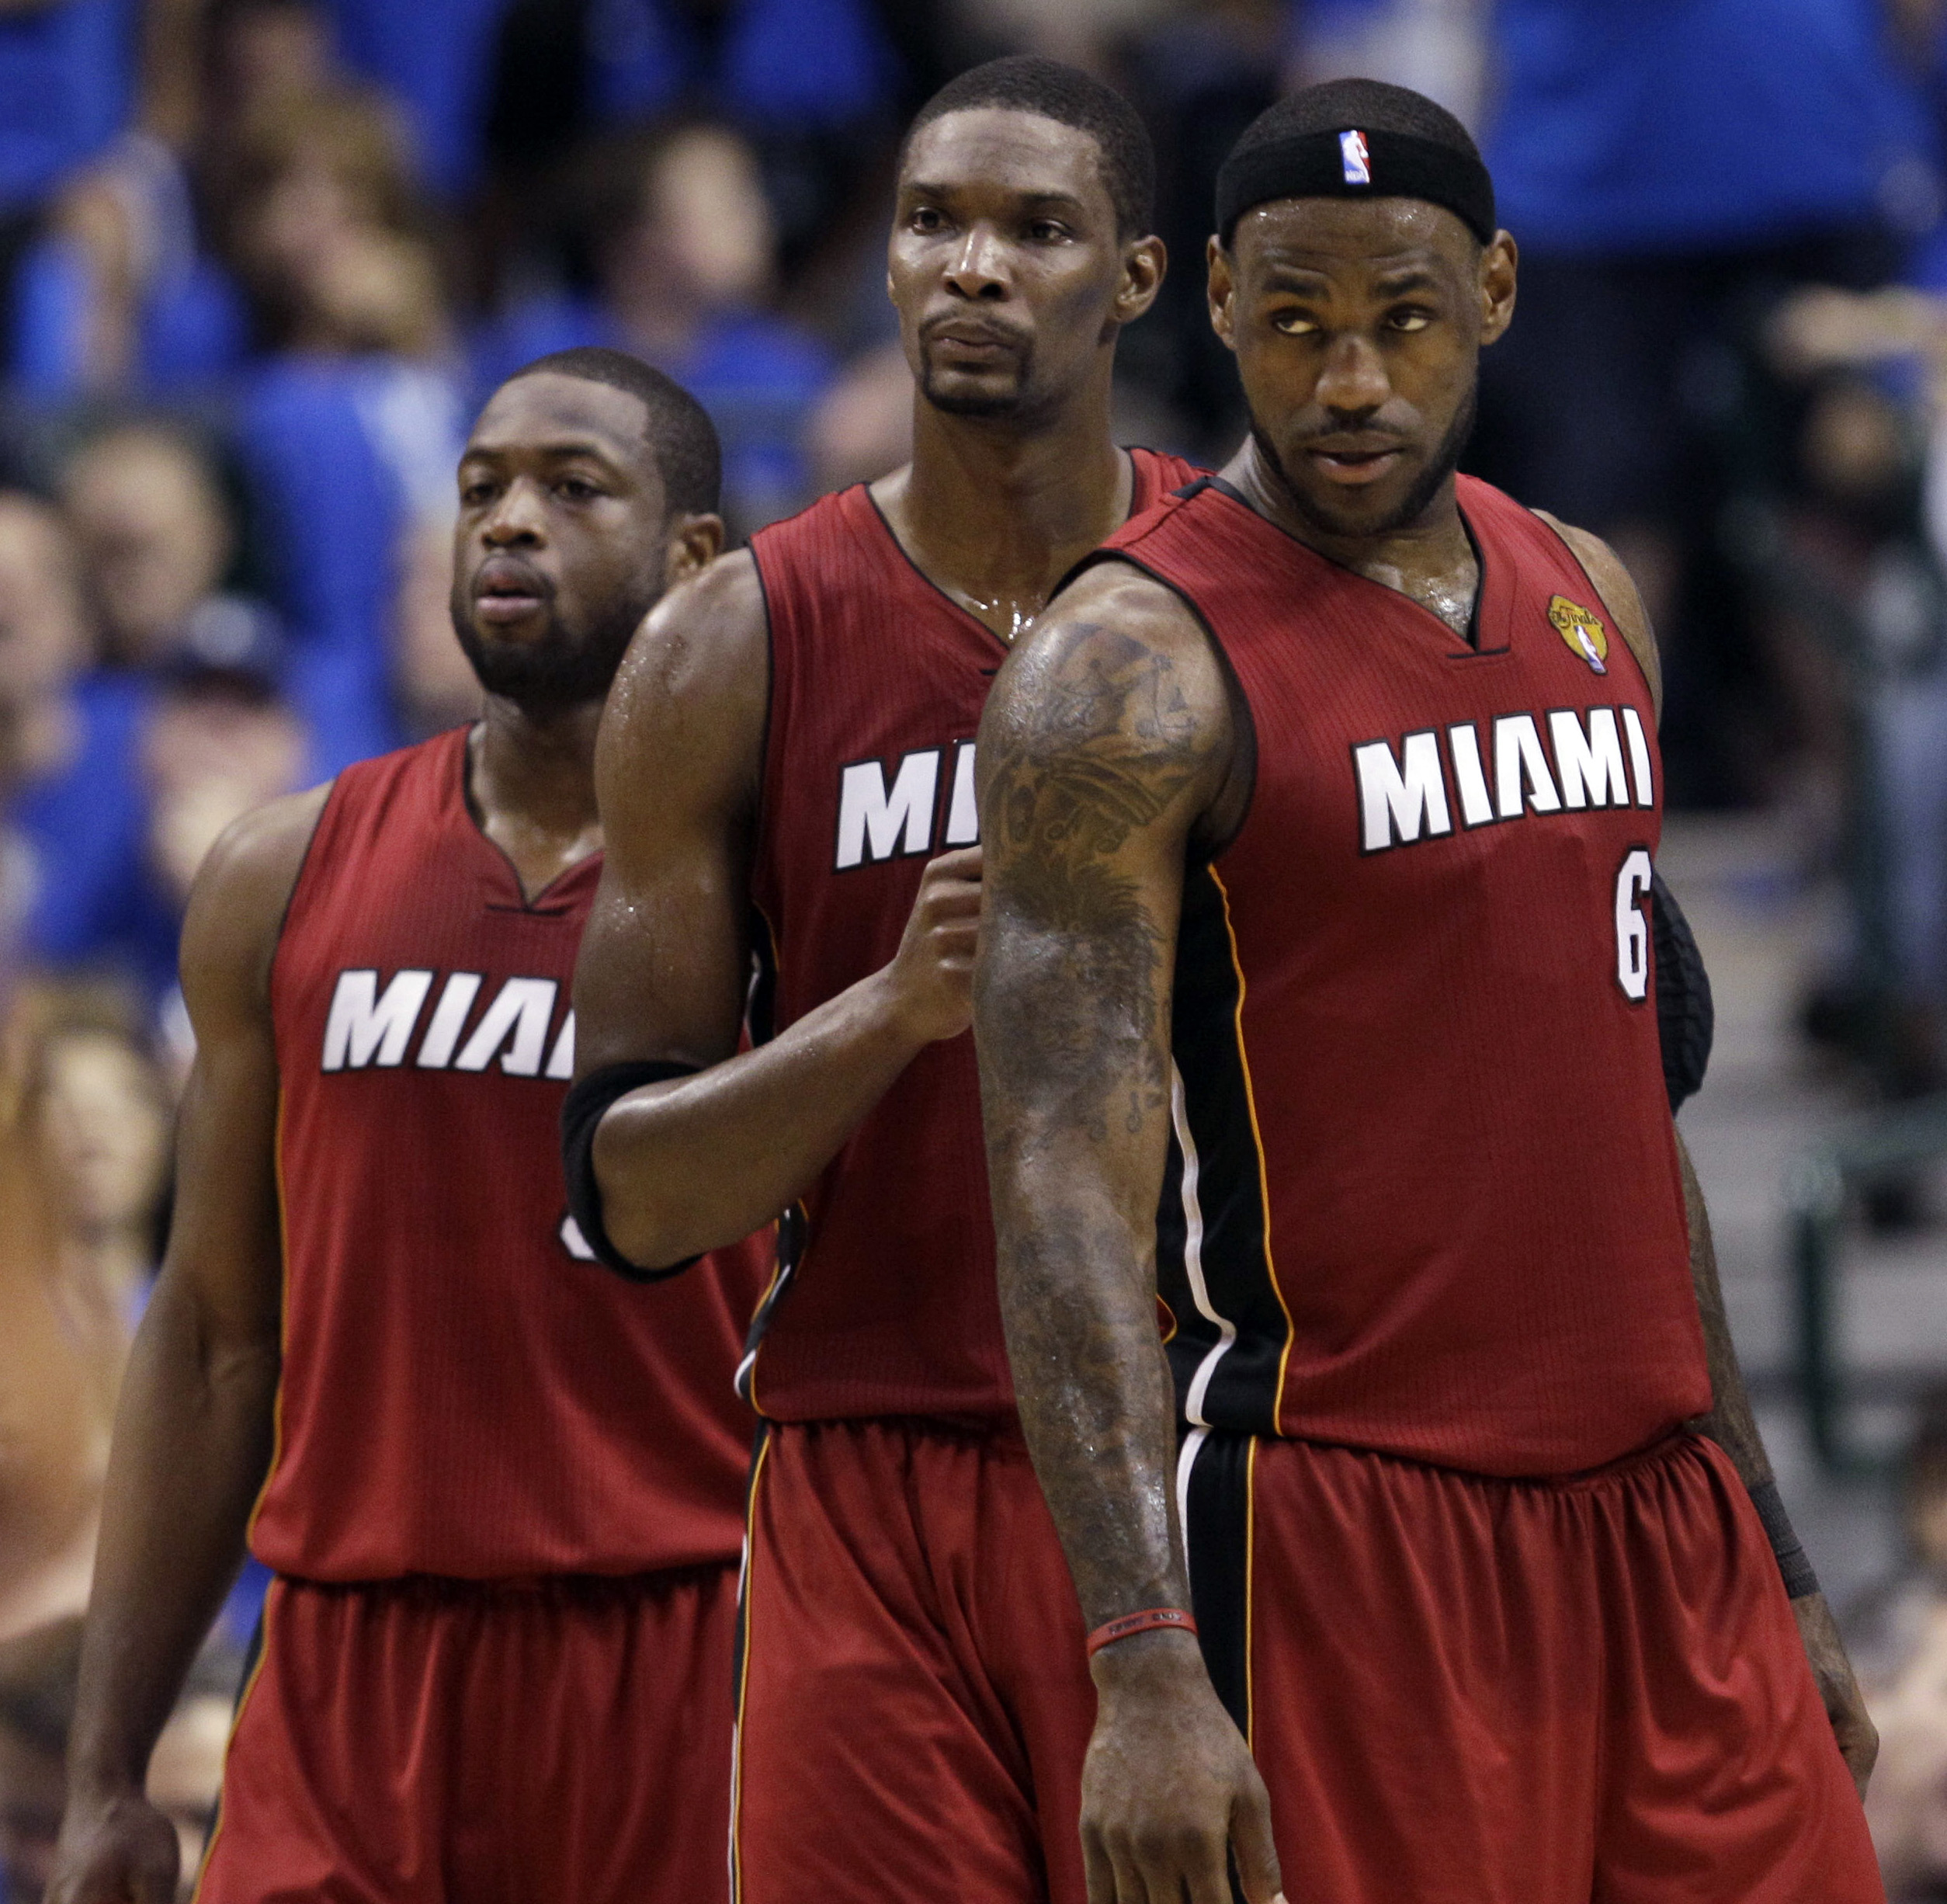 Miami Heat storsatsade med tre av NBA:s bästa spelare. Säsongsinledning blev en flopp av episka proportioner. Men slutligen nådde Lebron James, Dwayne Wade och Chris Bosh hela vägen till finalspelet...